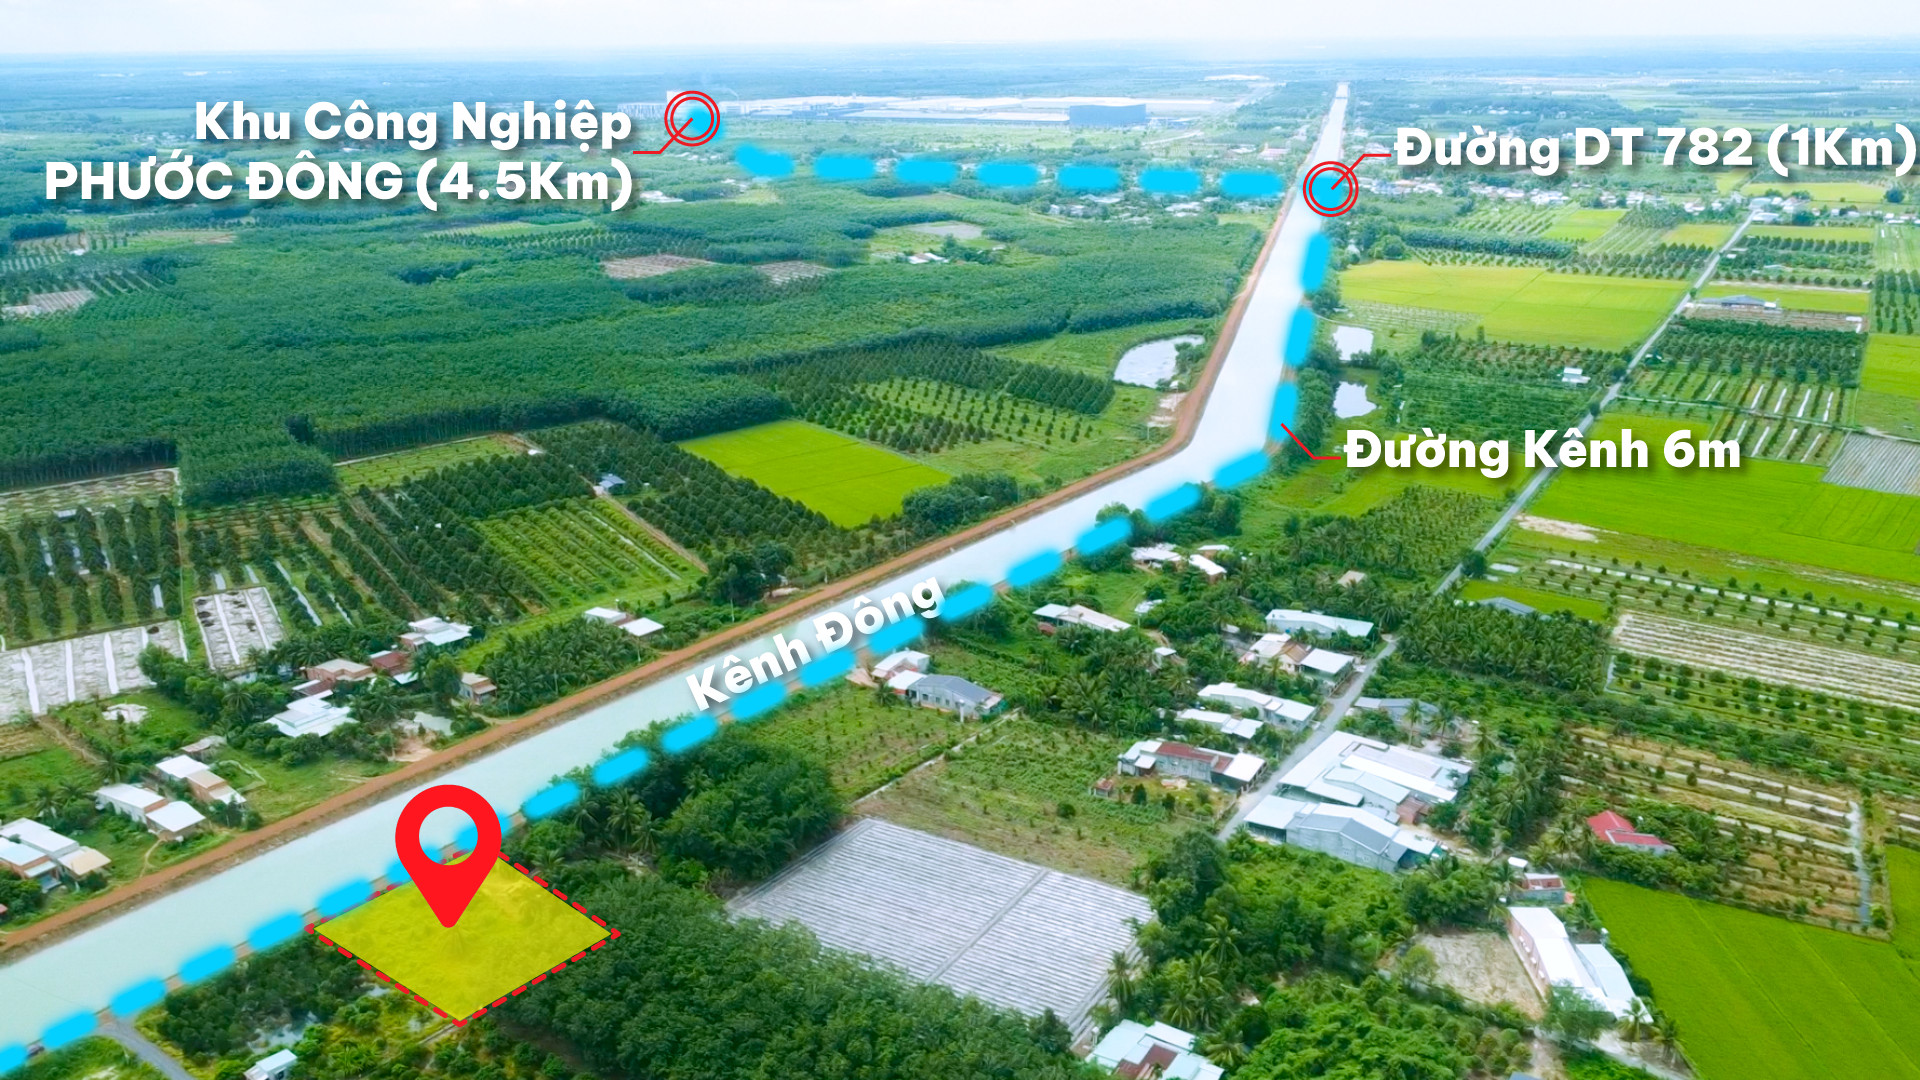 Chủ đất NGỘP bán đất Gò Dầu Tây Ninh ngay khu Công nghiệp Phước Đông, mặt tiền Kênh Đông DT 185m2, đất thổ cư. Giá 499 triệu